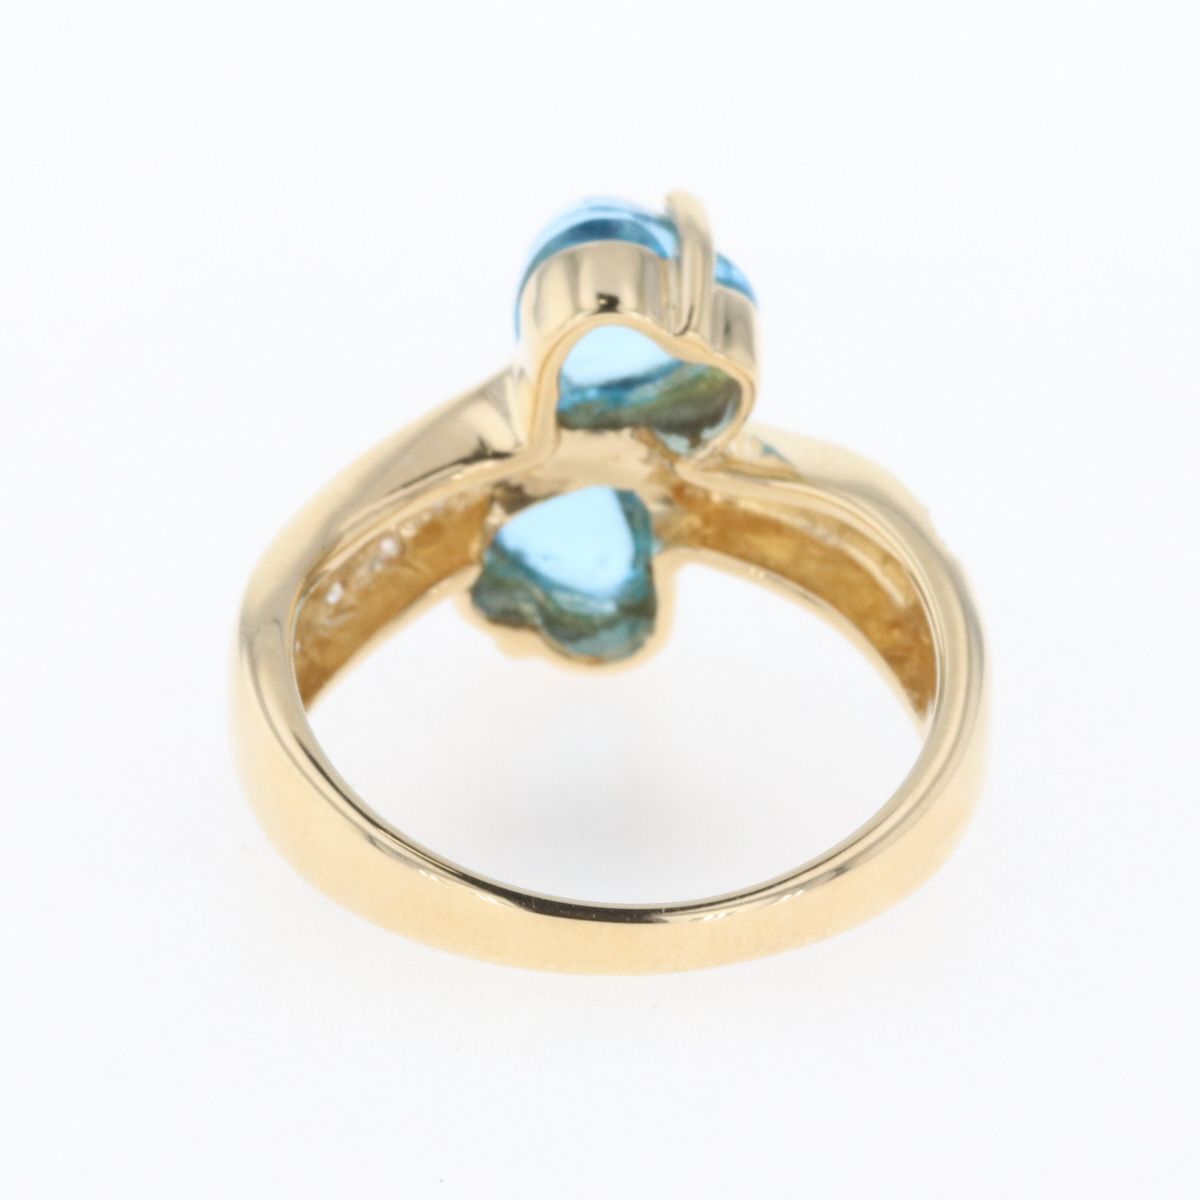 ブルートパーズ デザインリング K18 イエローゴールド メレダイヤ 指輪 